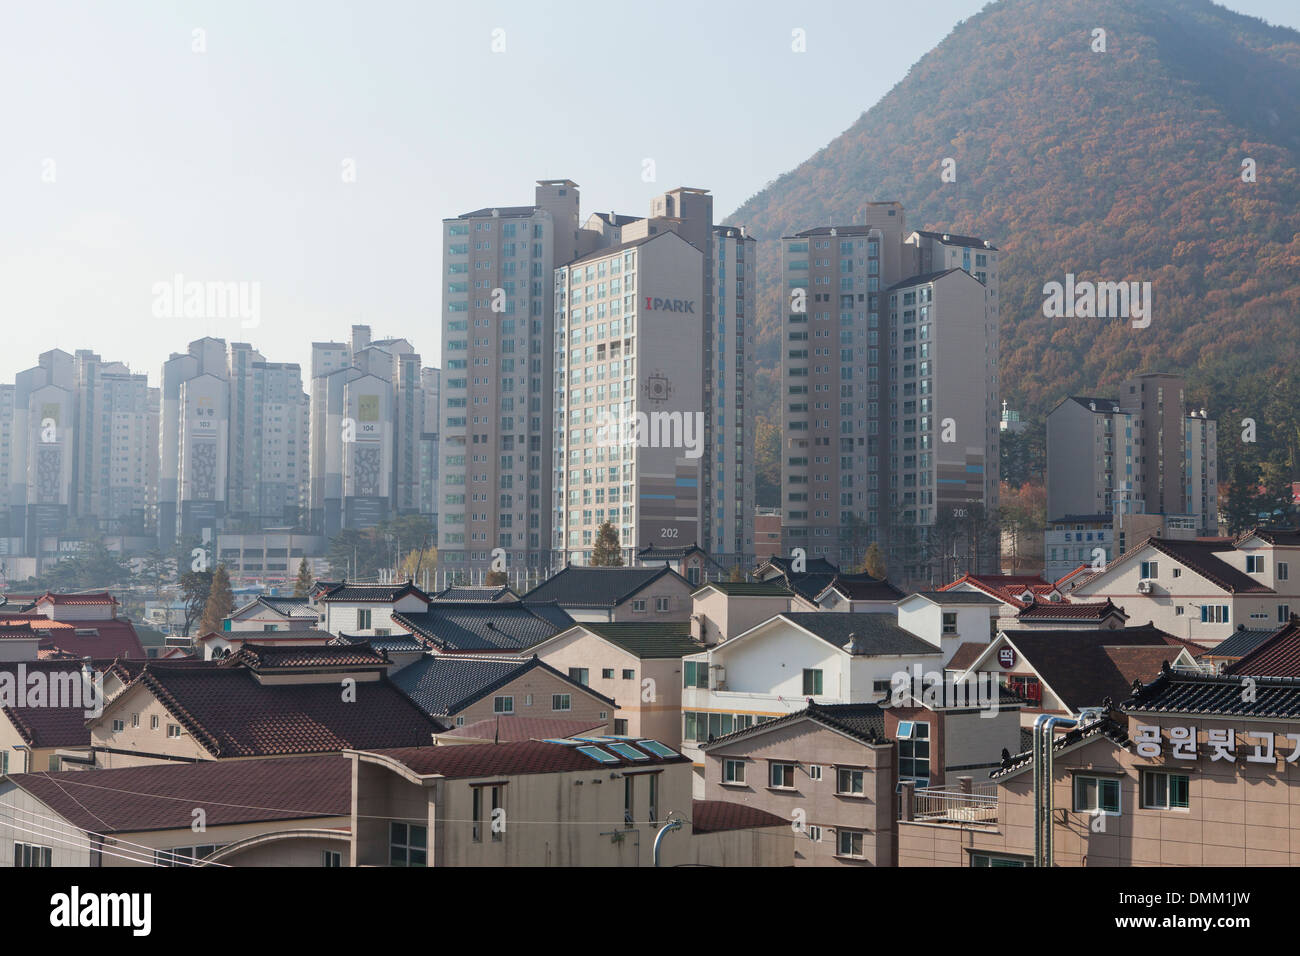 Nouveau haut-lieu complexe multi-logement traditionnel entre les maisons individuelles - Seoul, Corée du Sud Banque D'Images